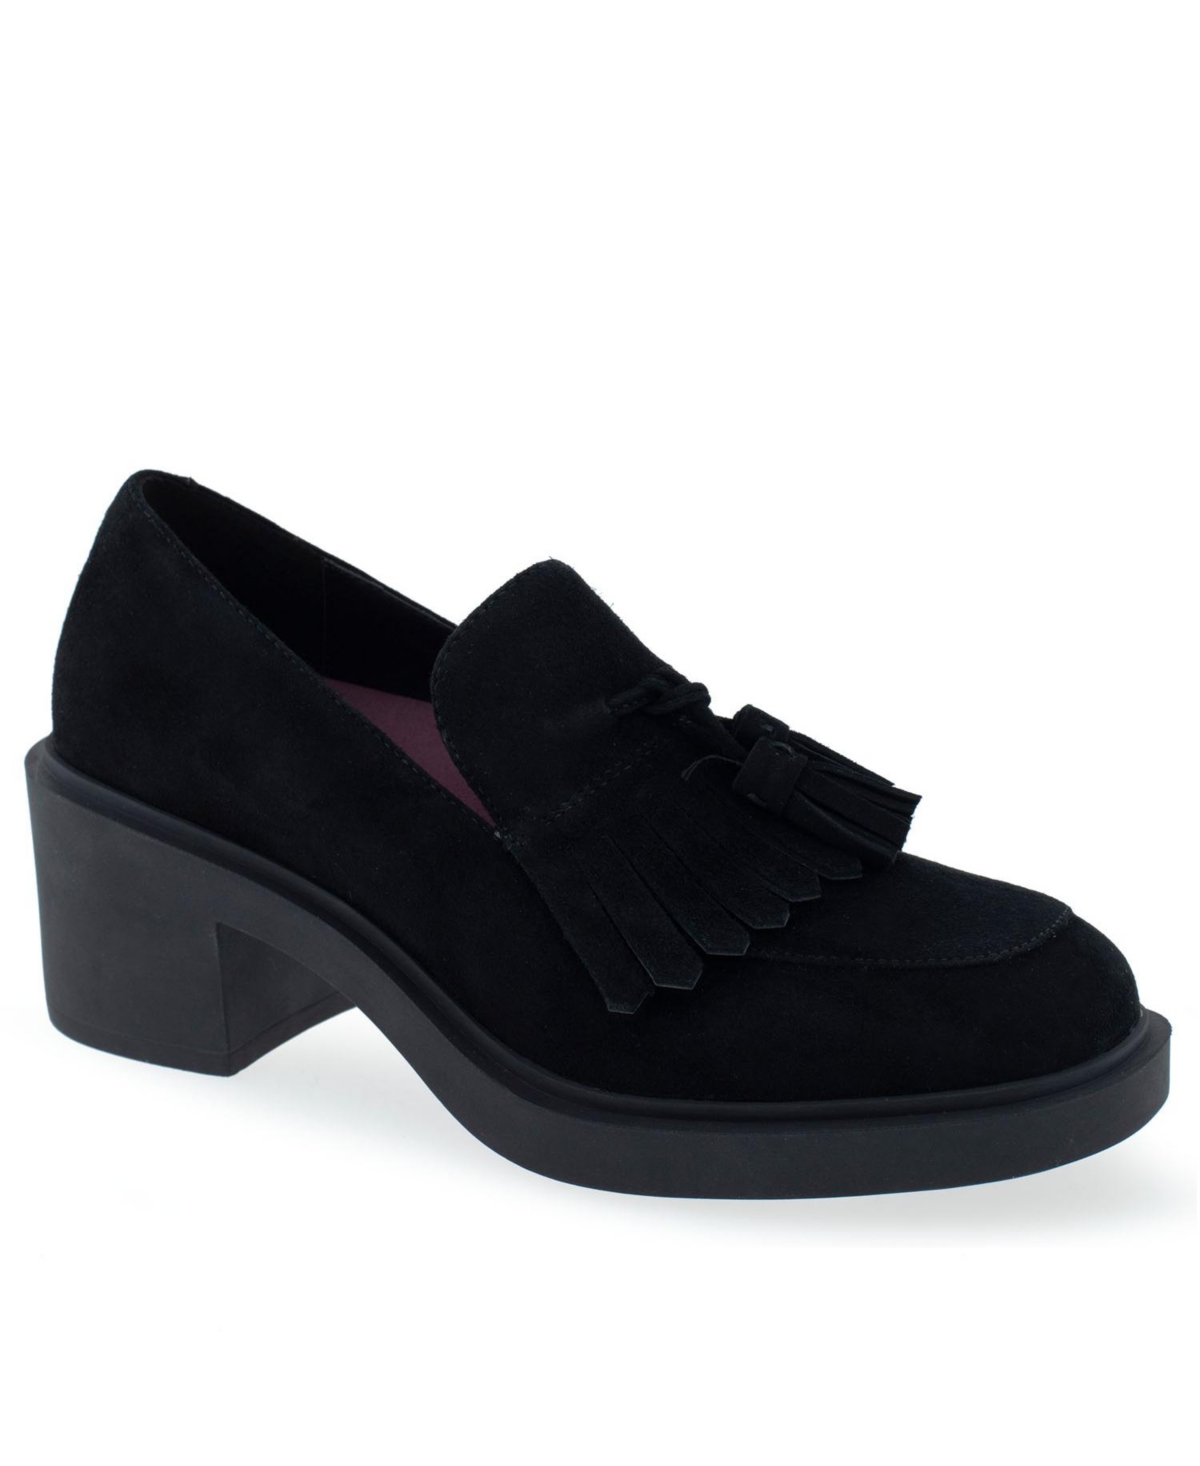 Women's Gibes Tailored Block Heel Shoe - Black Suede